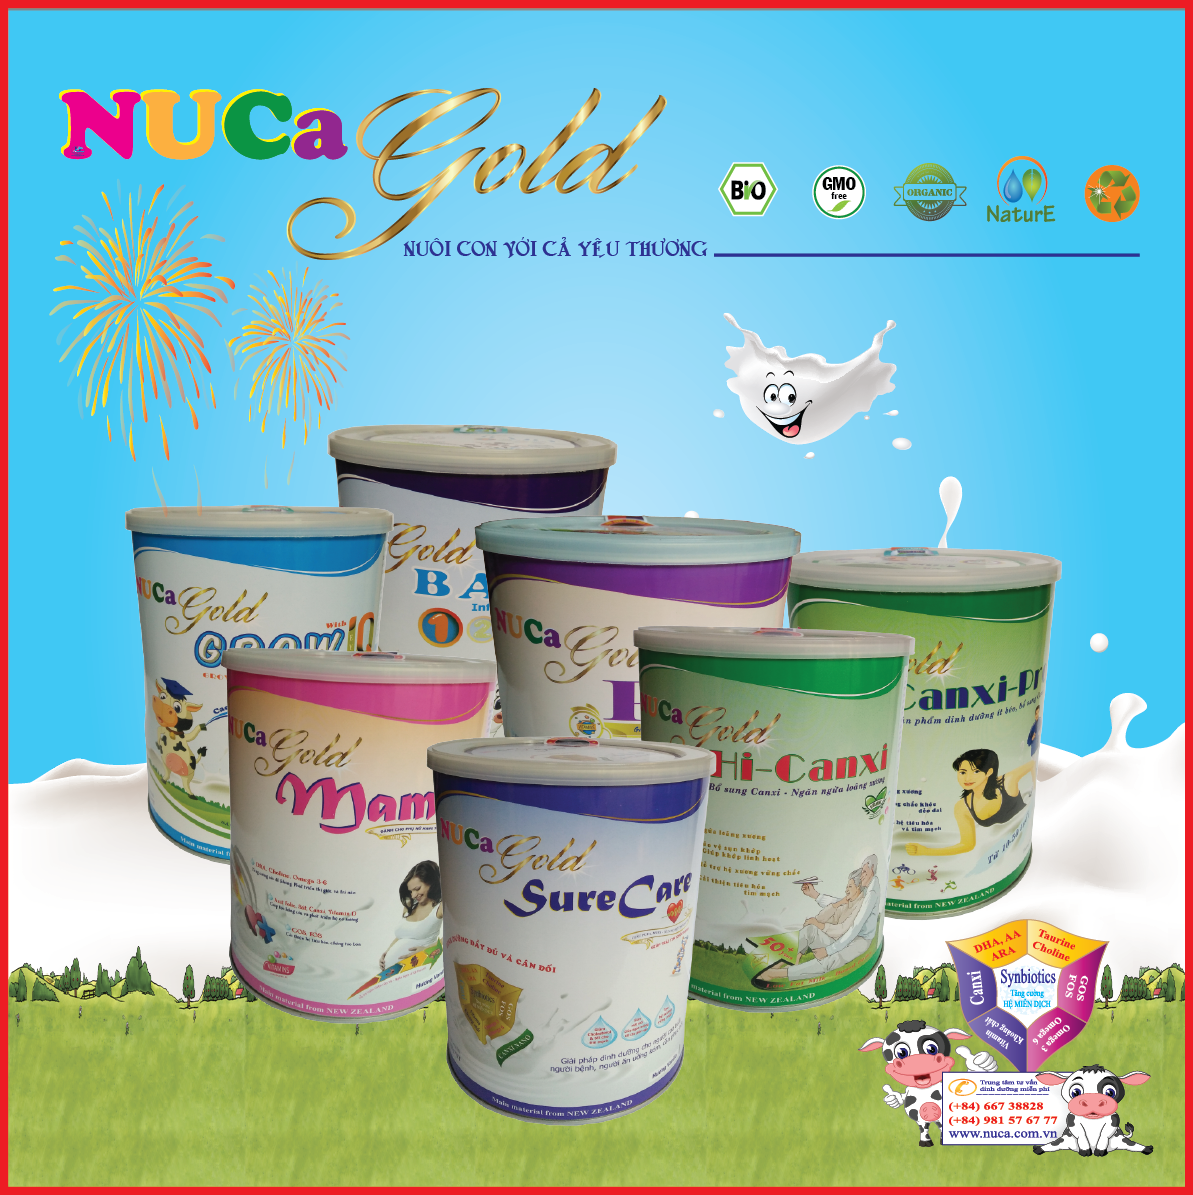 Sữa bột NUCA Gold – đồng hành cùng bạn chăm sóc gia đình